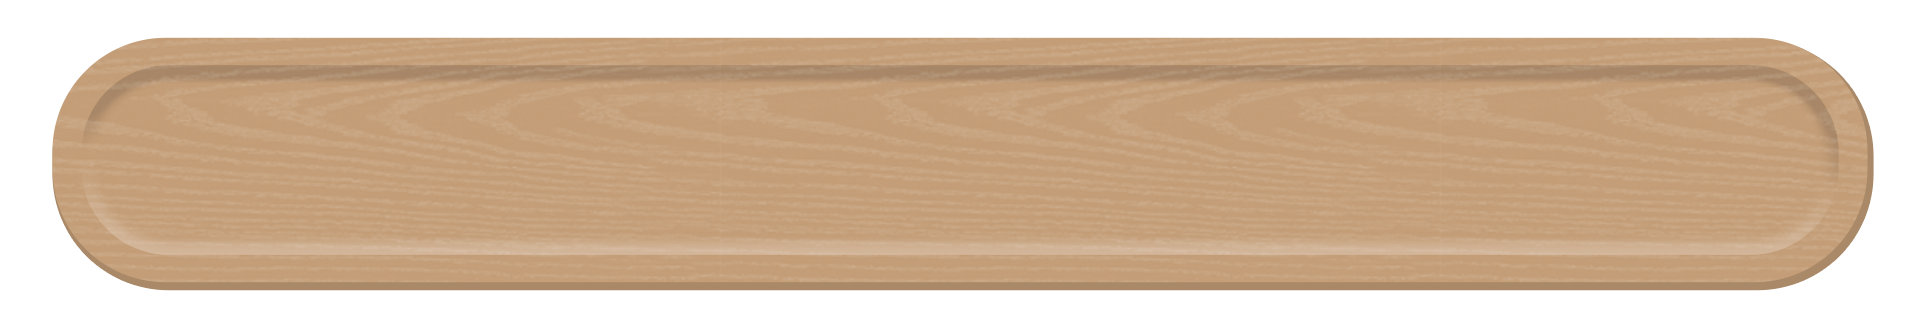 木製おぼんのテロップ ベージュ テロップ サイト